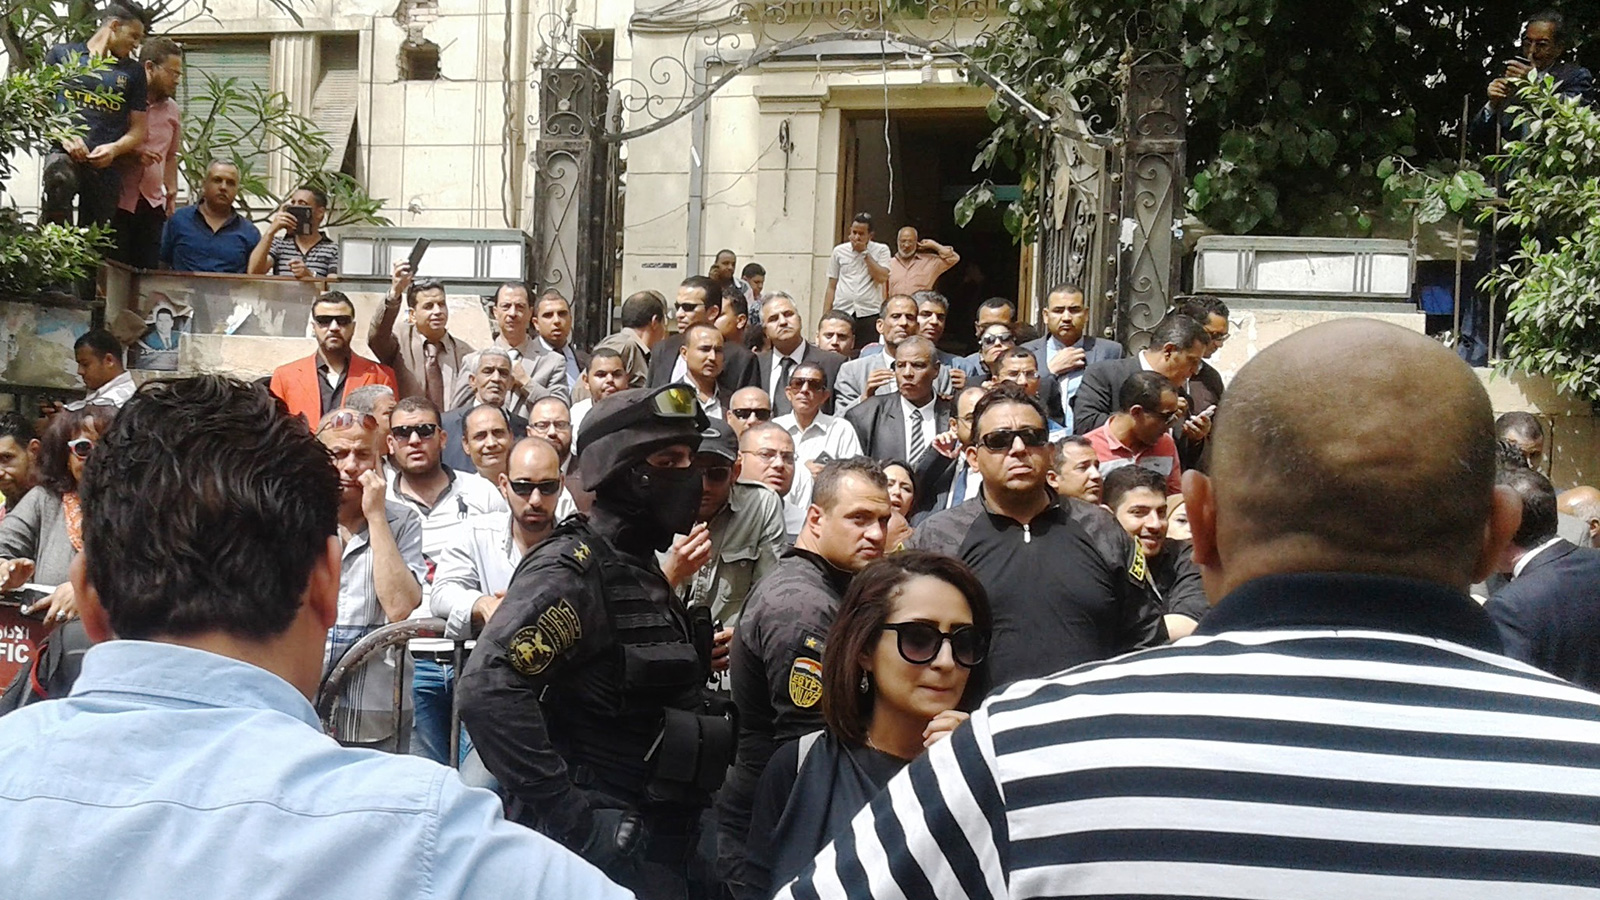 وفقا لمعارضين، فإن القبضة الأمنية المشددة كانت دائما ما تبرز في وجه المتظاهرين السلميين ضد سياسات النظام (الجزيرة)